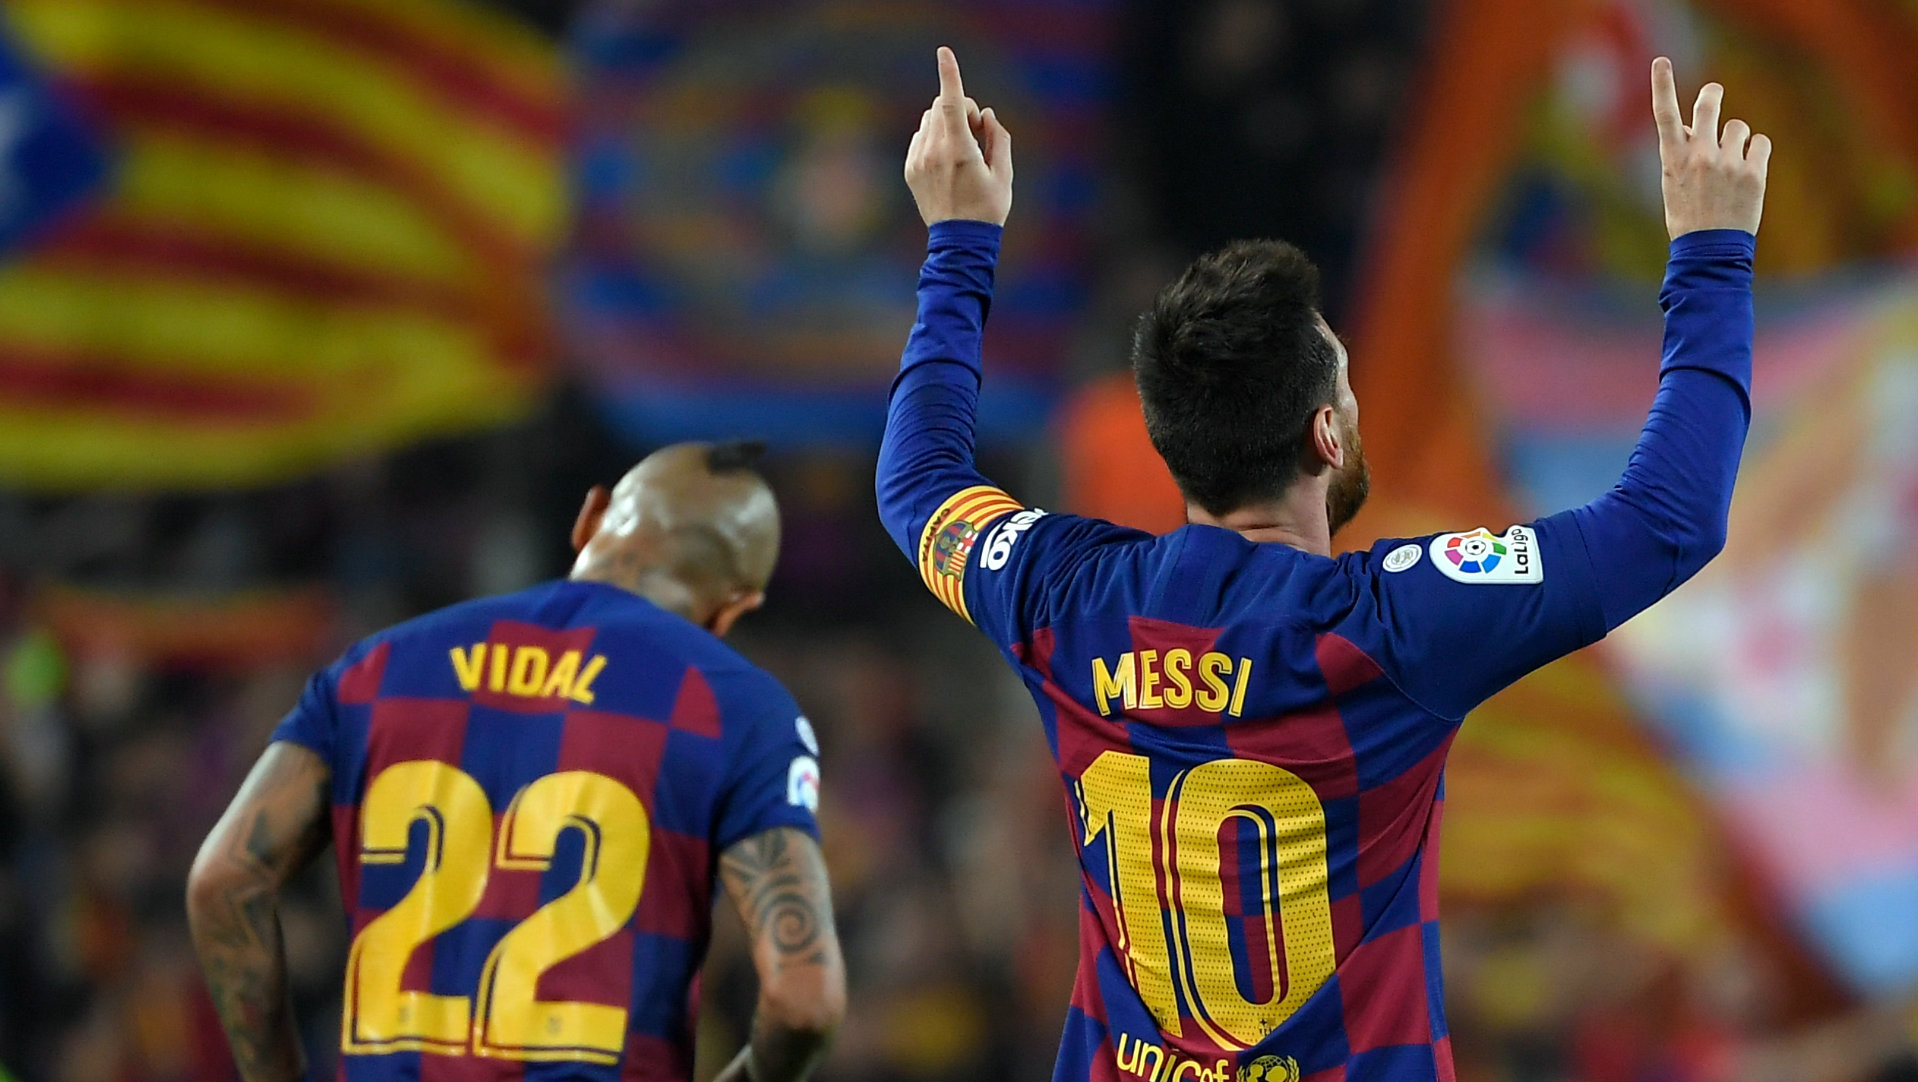 Messi réalise un nouveau record